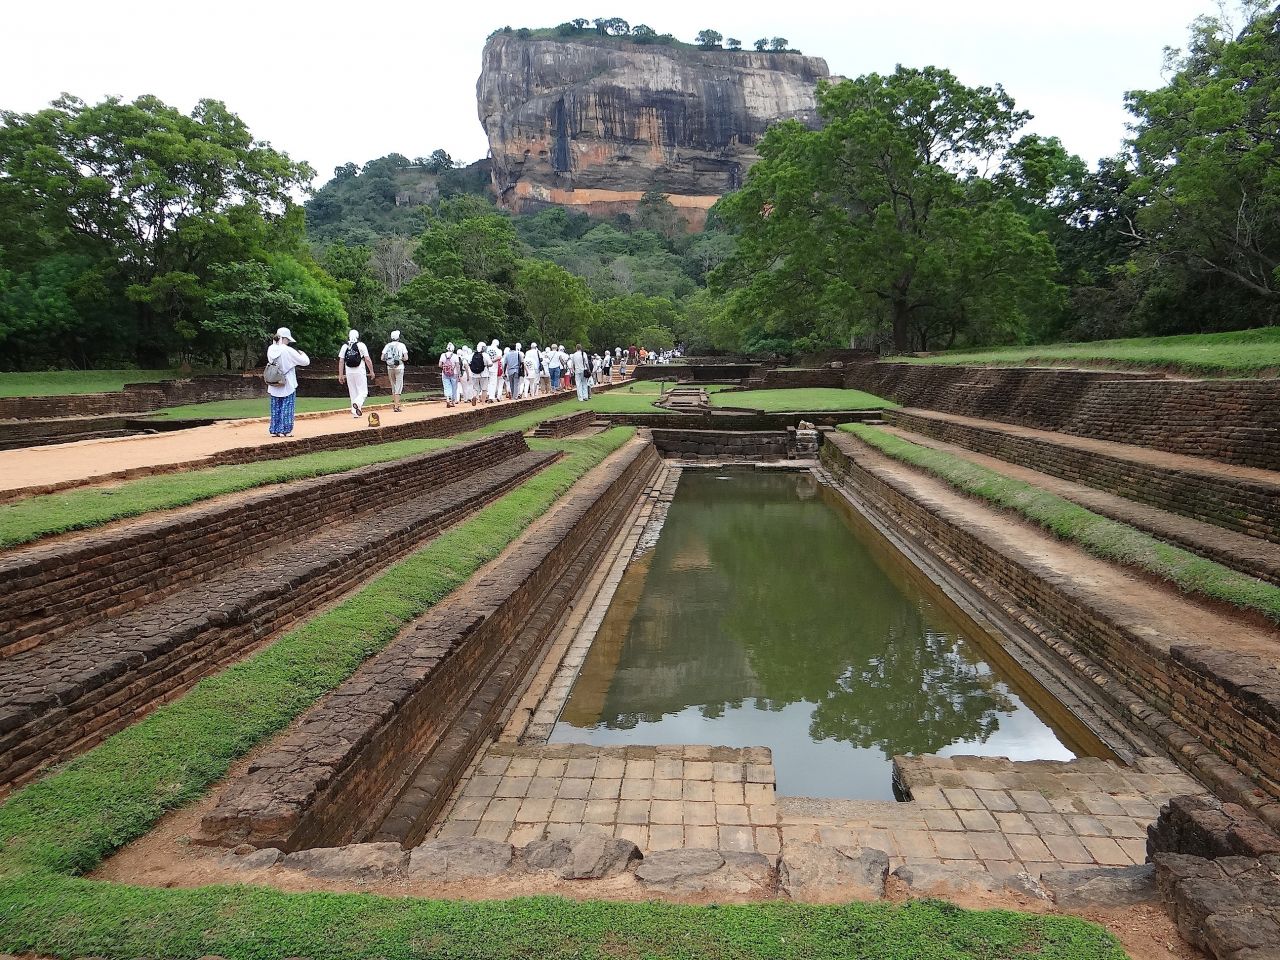 Это узкий сад фонтанов, спланированный в два яруса.  - Шри-Ланка 2017. Часть 4.